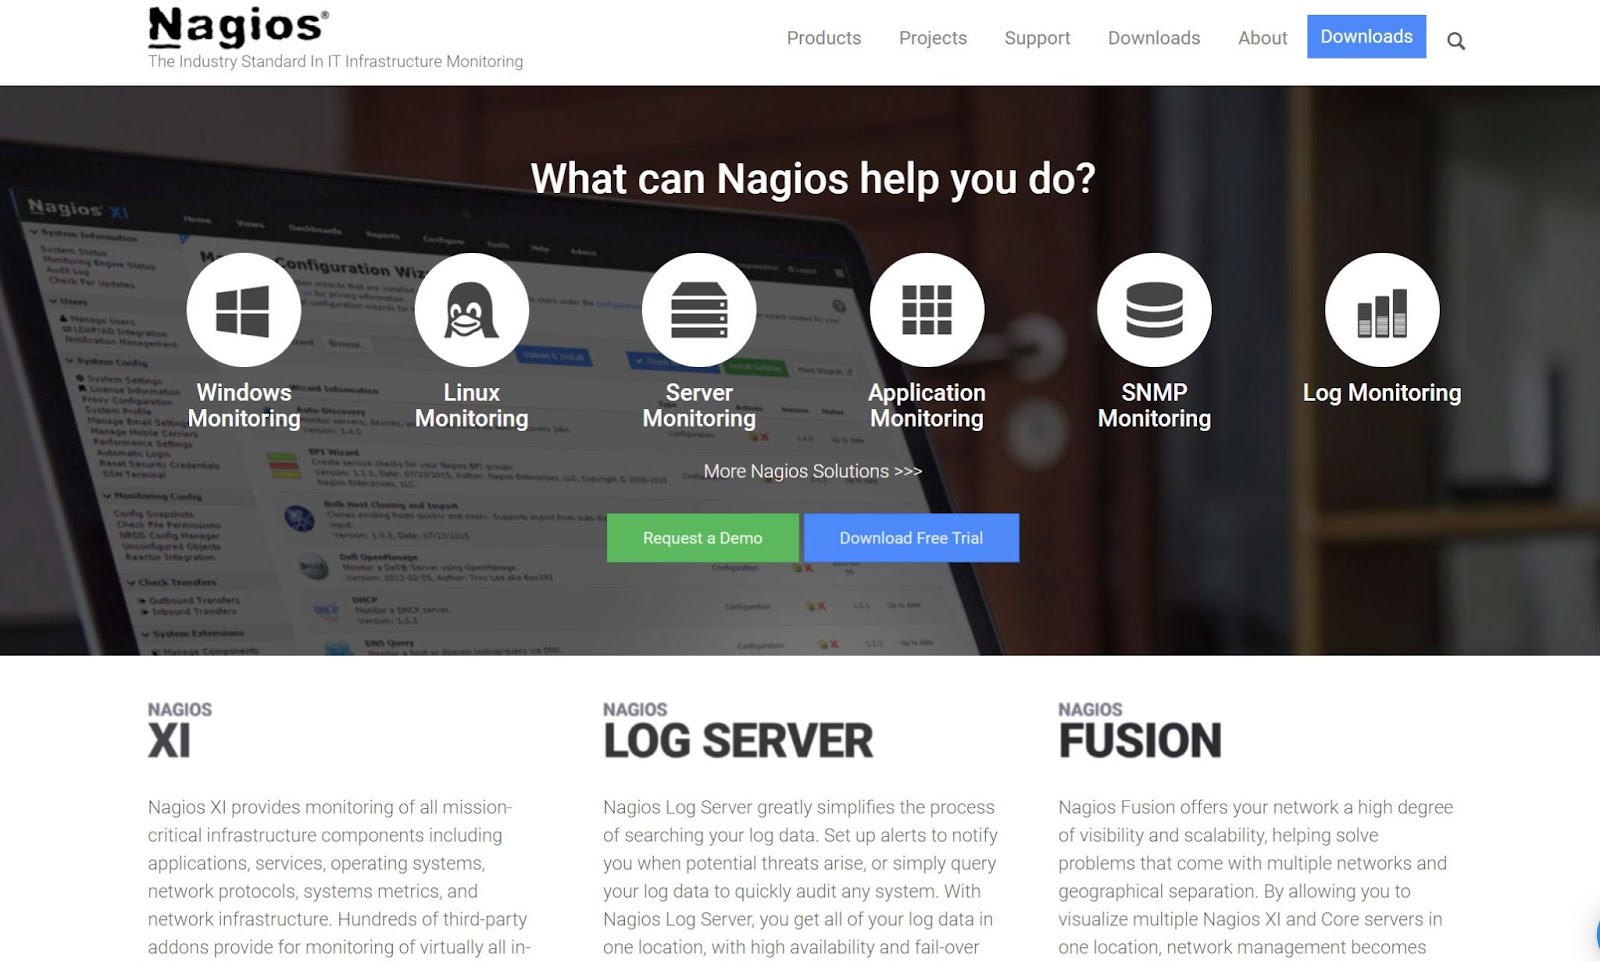 A screenshot of the Nagios homepage